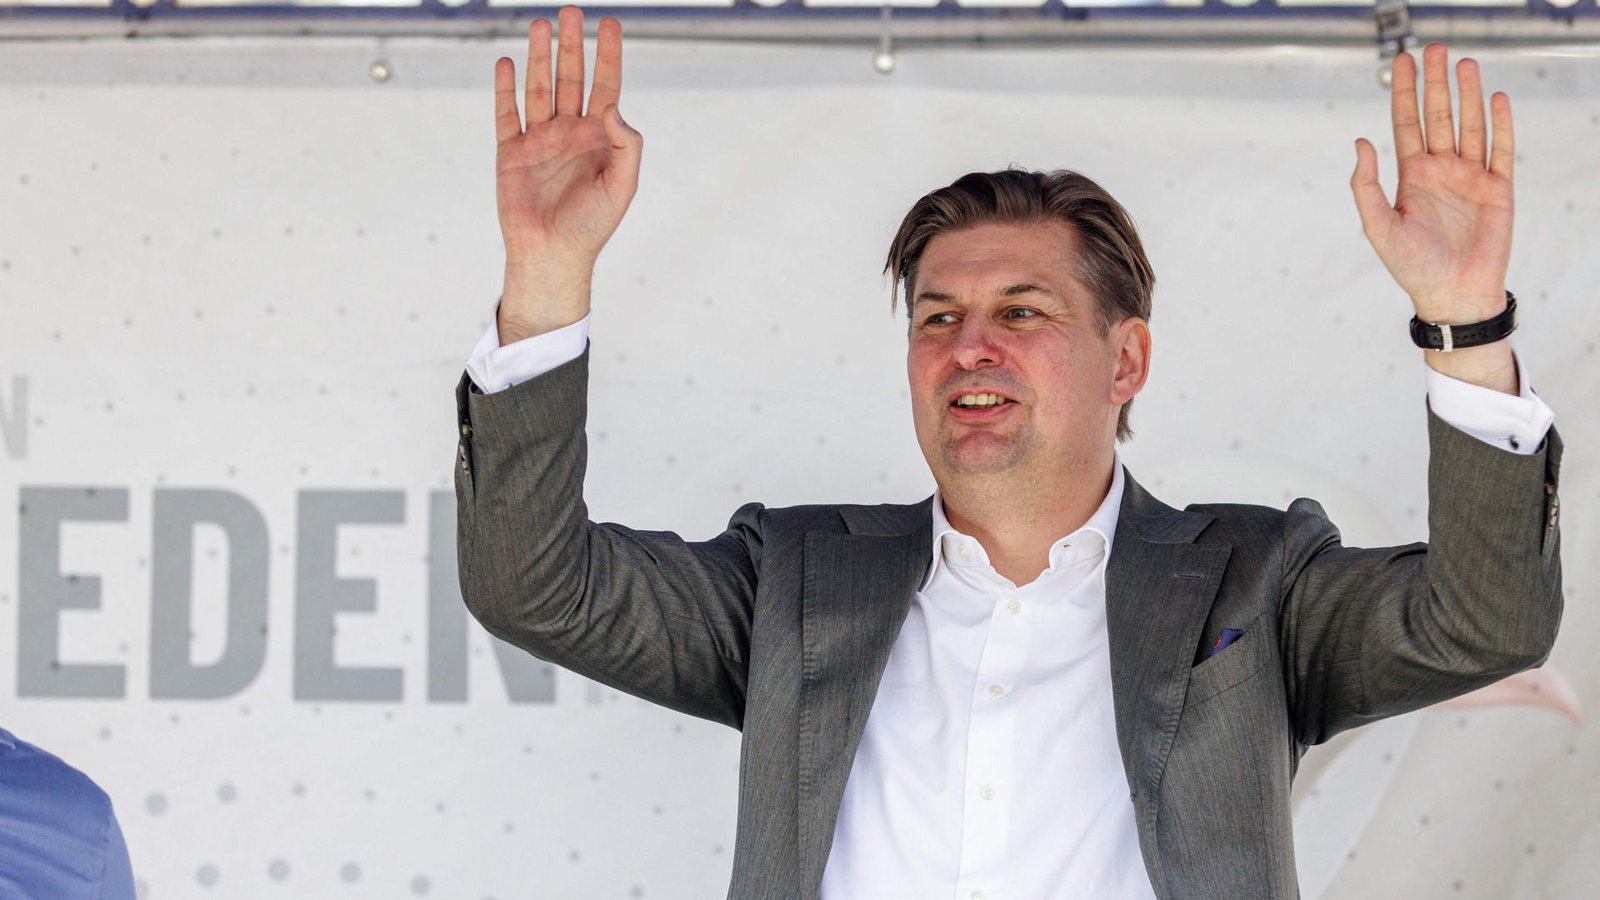 Nach dem Wahlkampfauftakt in Donaueschingen am 27. April sagte Maximilian Krah nun auch die Termine in Hessen ab. (Archivbild)Foto: AFP/JENS SCHLUETER